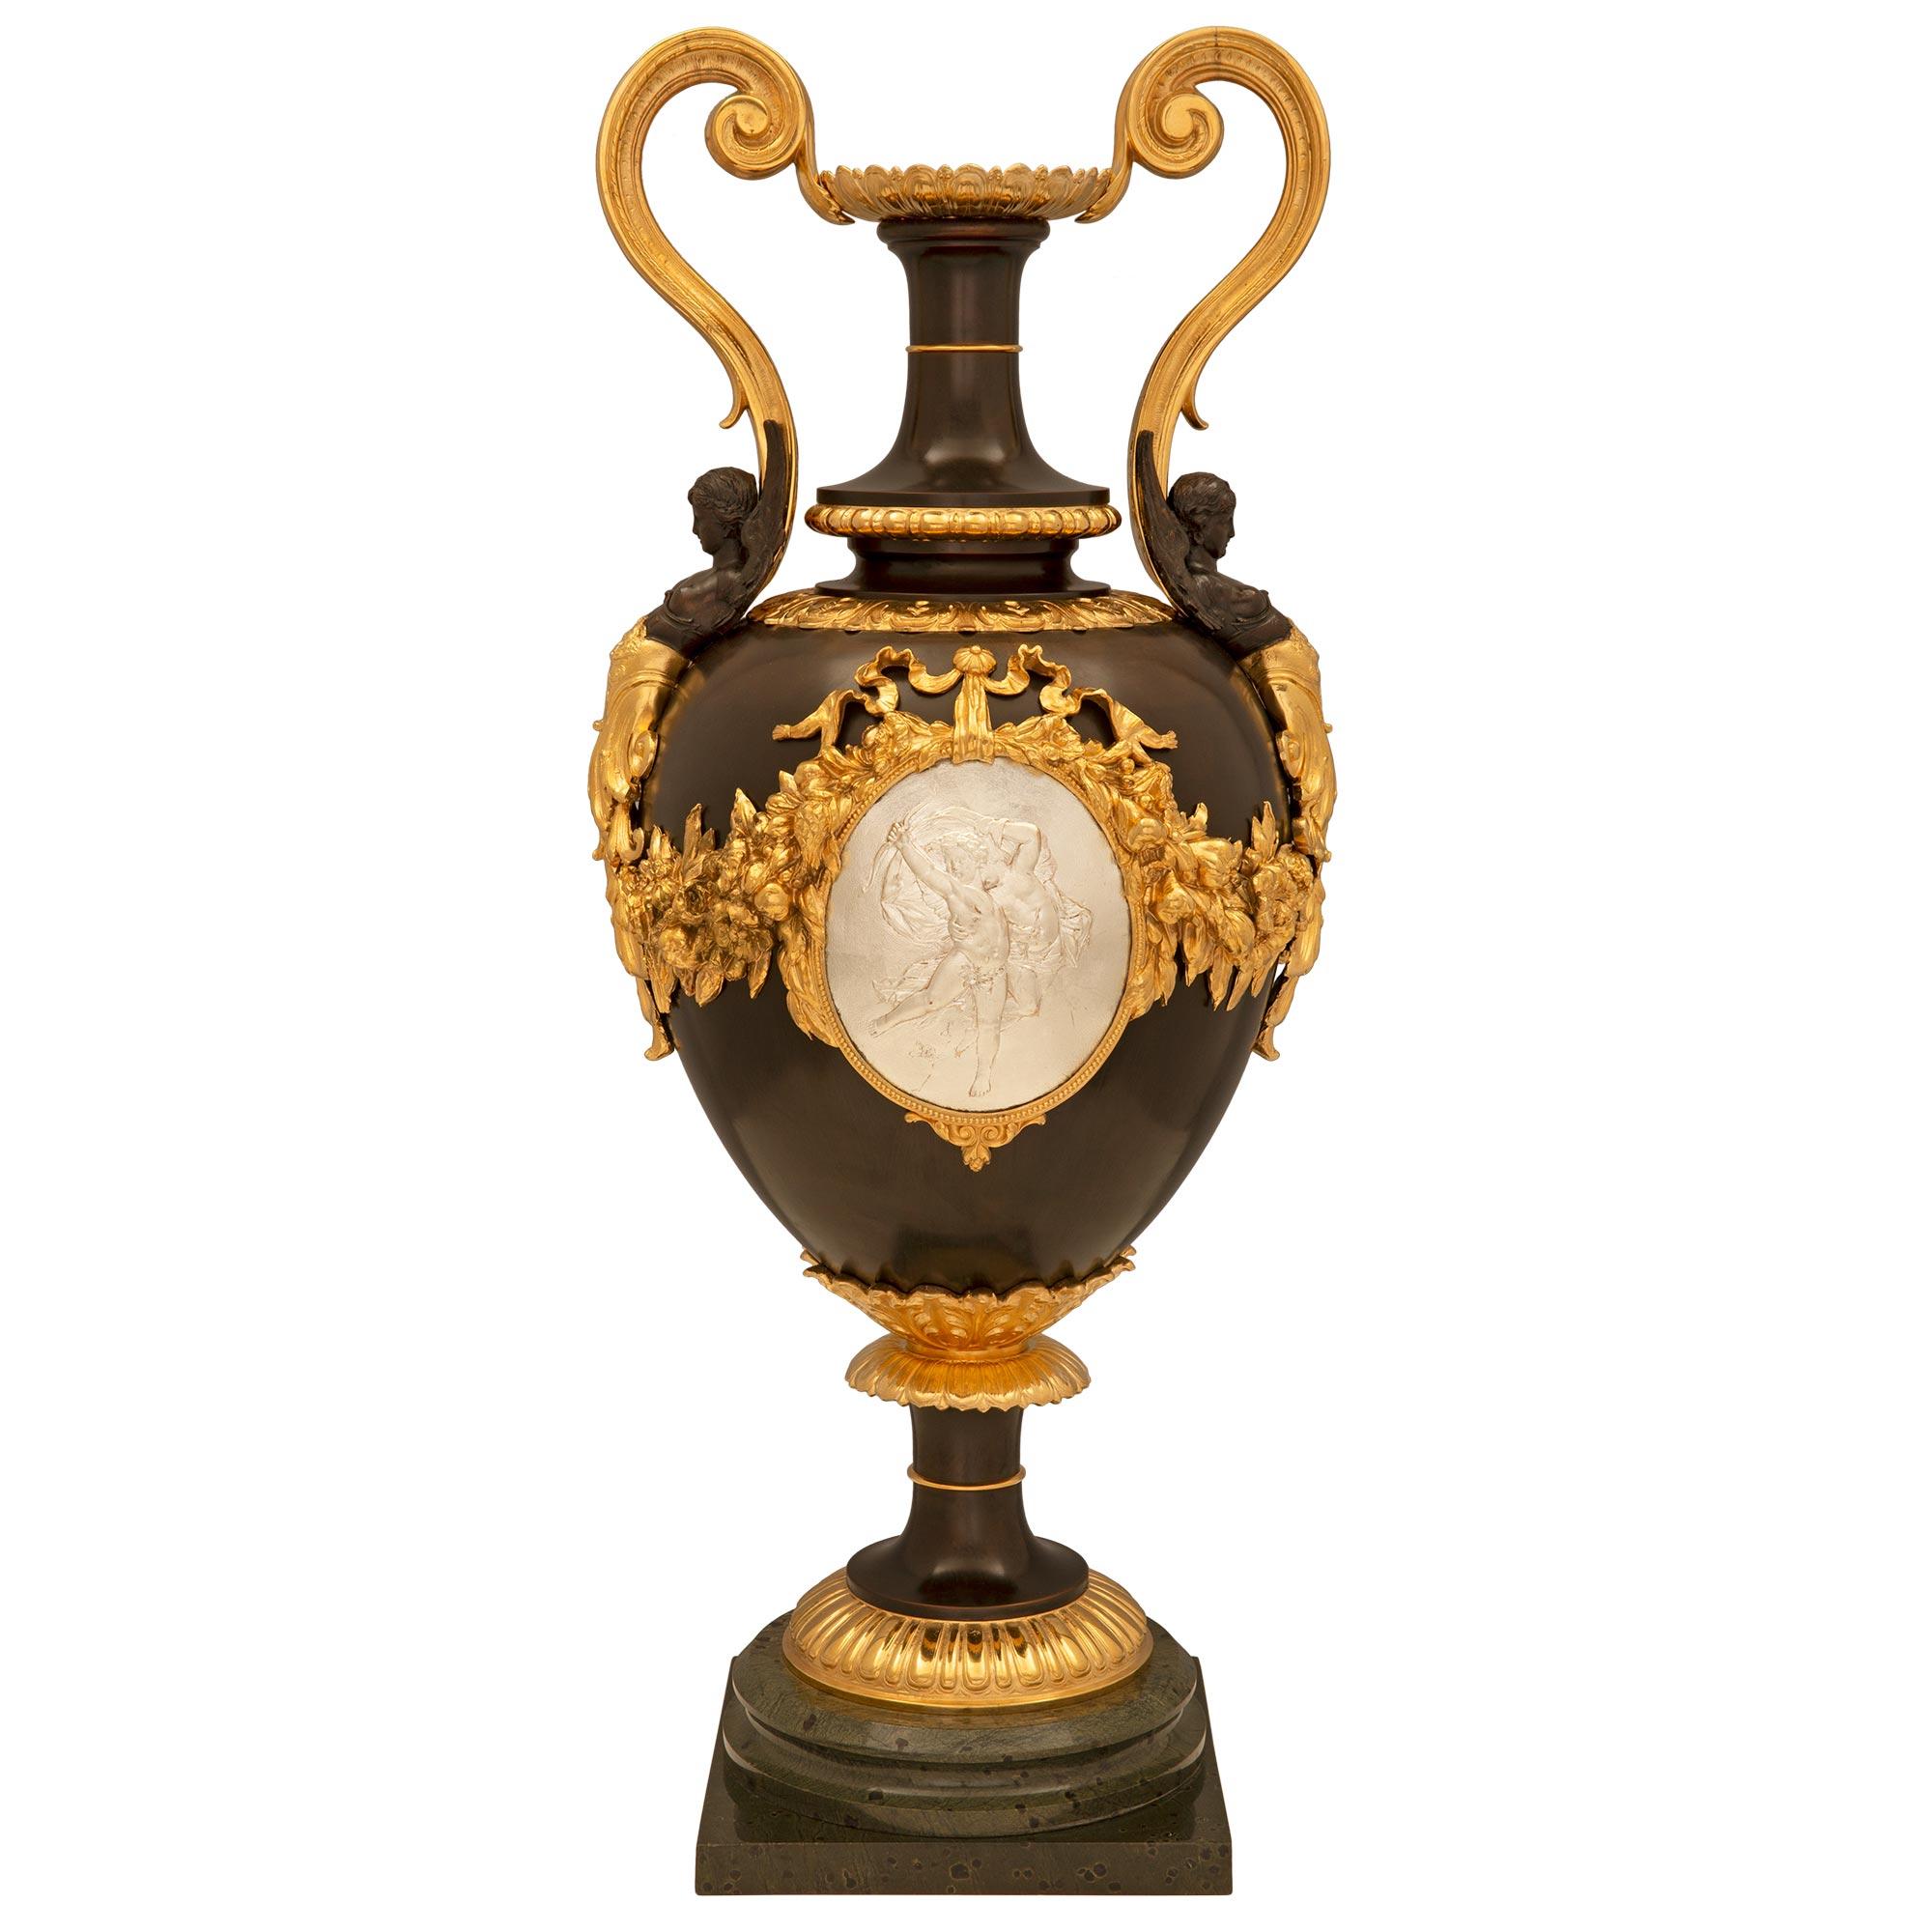 Eine atemberaubende große Französisch 19. Jahrhundert Louis XVI st. Belle Époque Zeitraum patiniert Bronze, versilberte Bronze und Ormolu Urne. Die Urne steht auf einem quadratischen Sockel unter einem feinen, kreisförmigen, gesprenkelten Band und